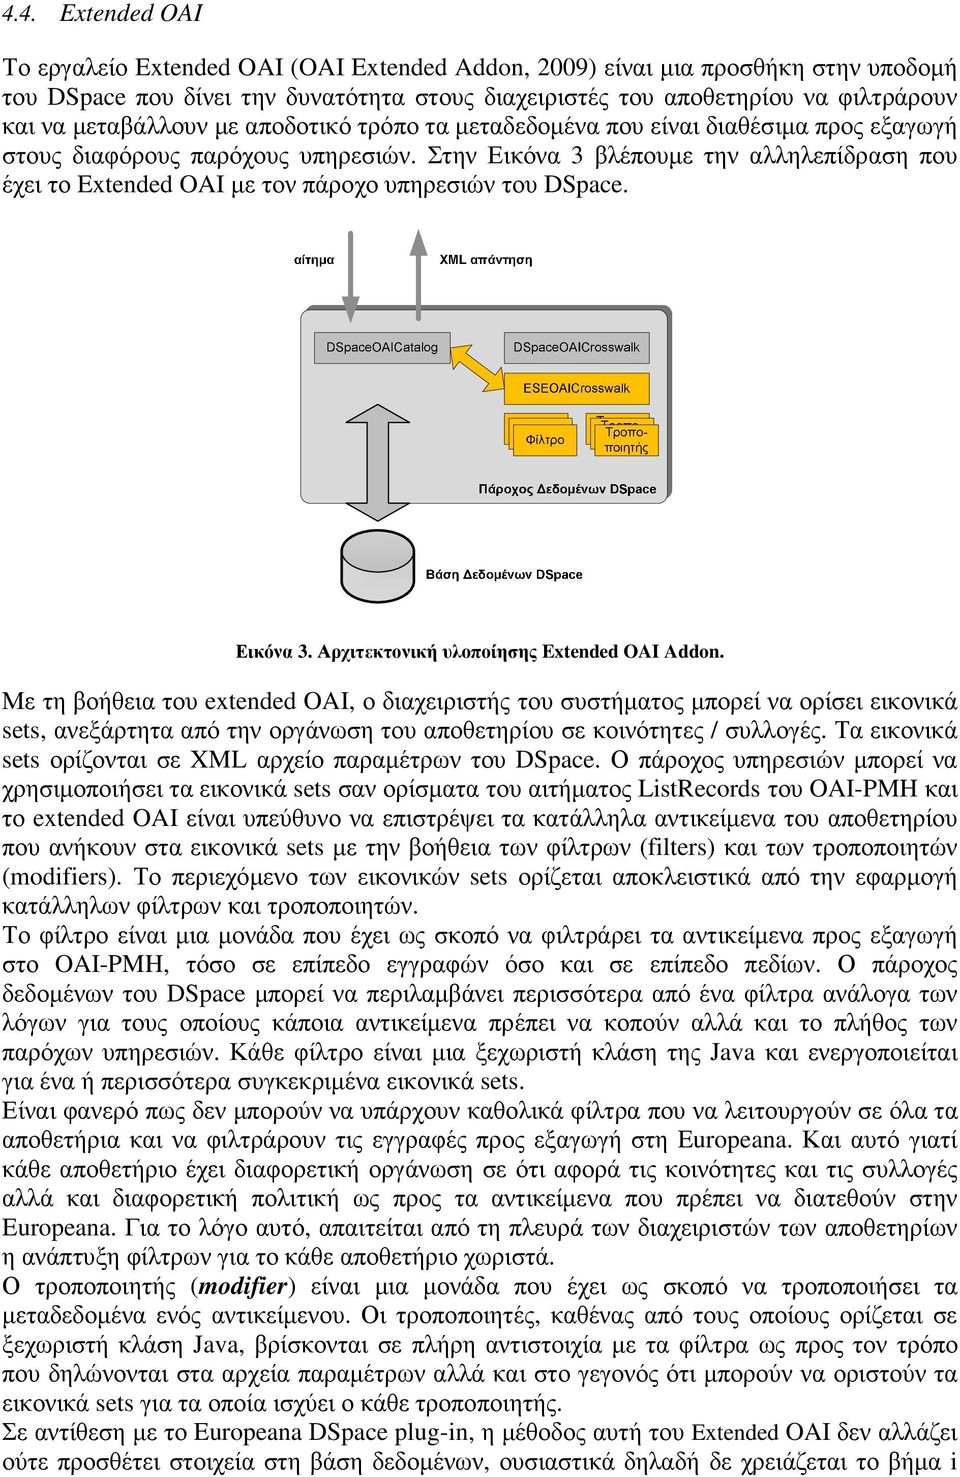 Στην Εικόνα 3 βλέπουµε την αλληλεπίδραση που έχει το Extended OAI µε τον πάροχο υπηρεσιών του DSpace. Εικόνα 3. Αρχιτεκτονική υλοποίησης Extended OAI Addon.